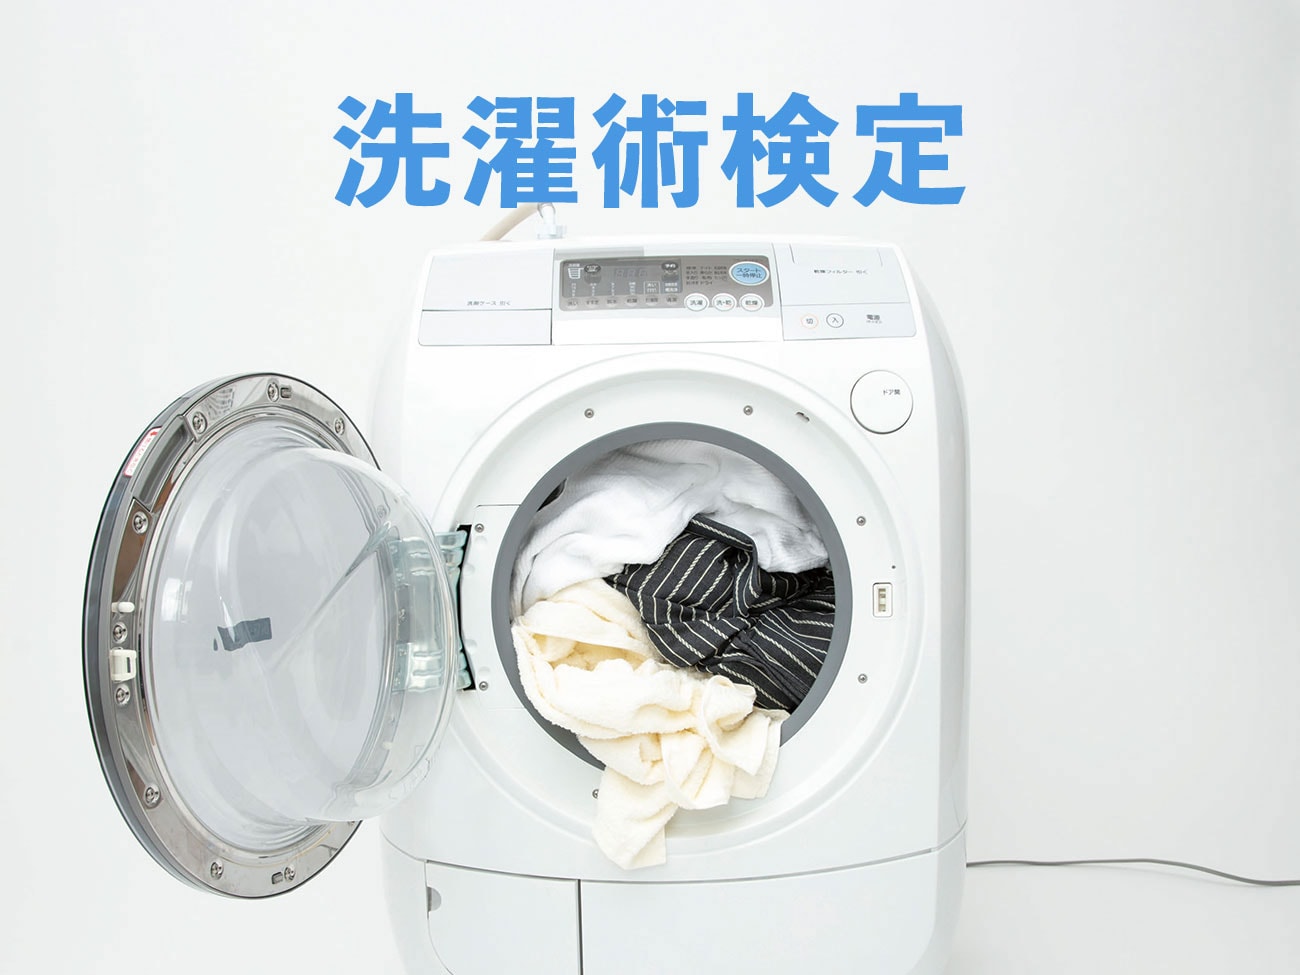 あなたの洗濯の常識、合ってますか？ まずは #洗濯術検定 でチェック！